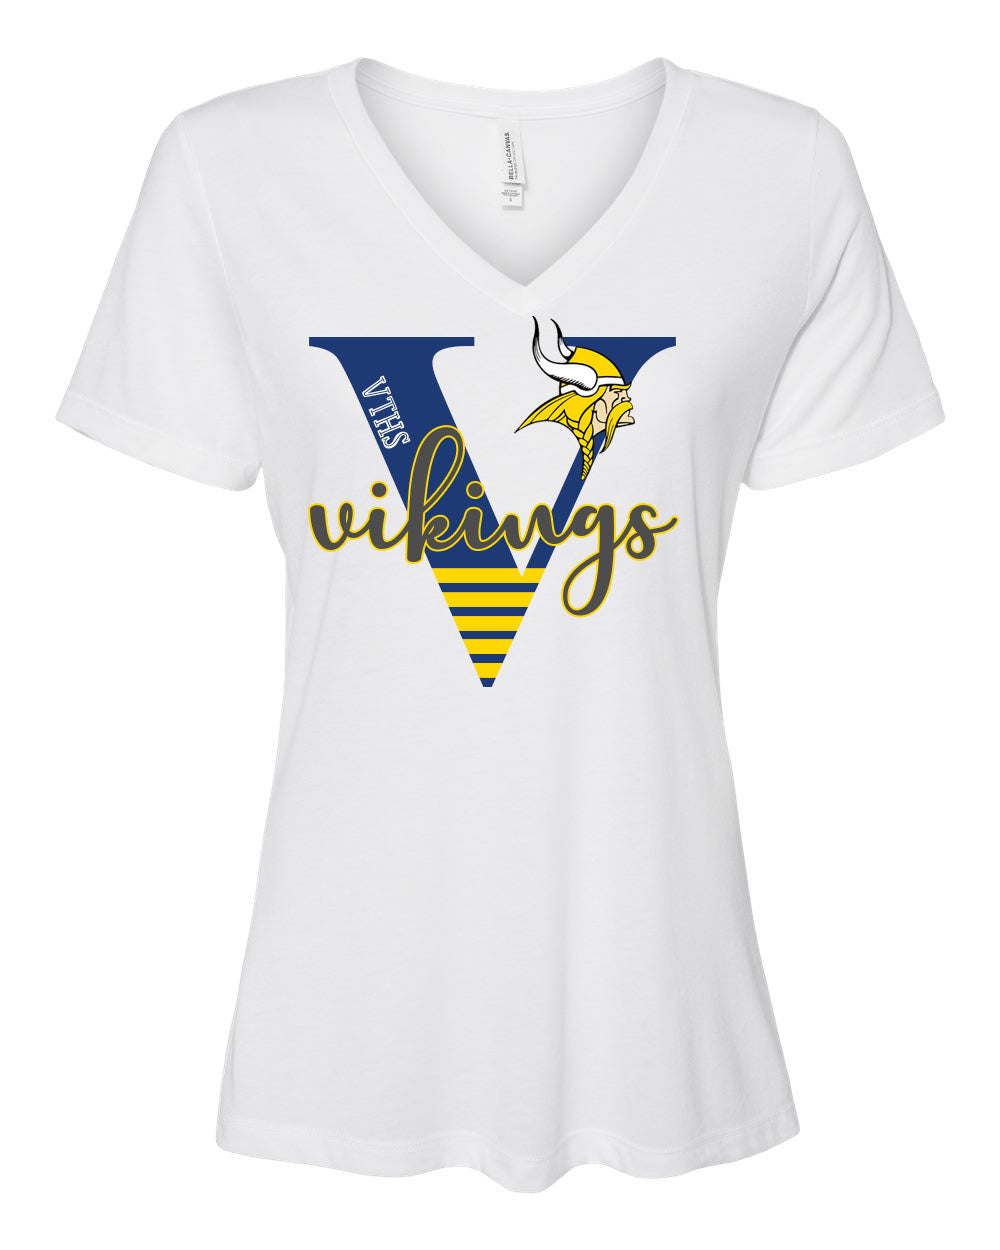 VTHS Design 20 V-neck T-shirt